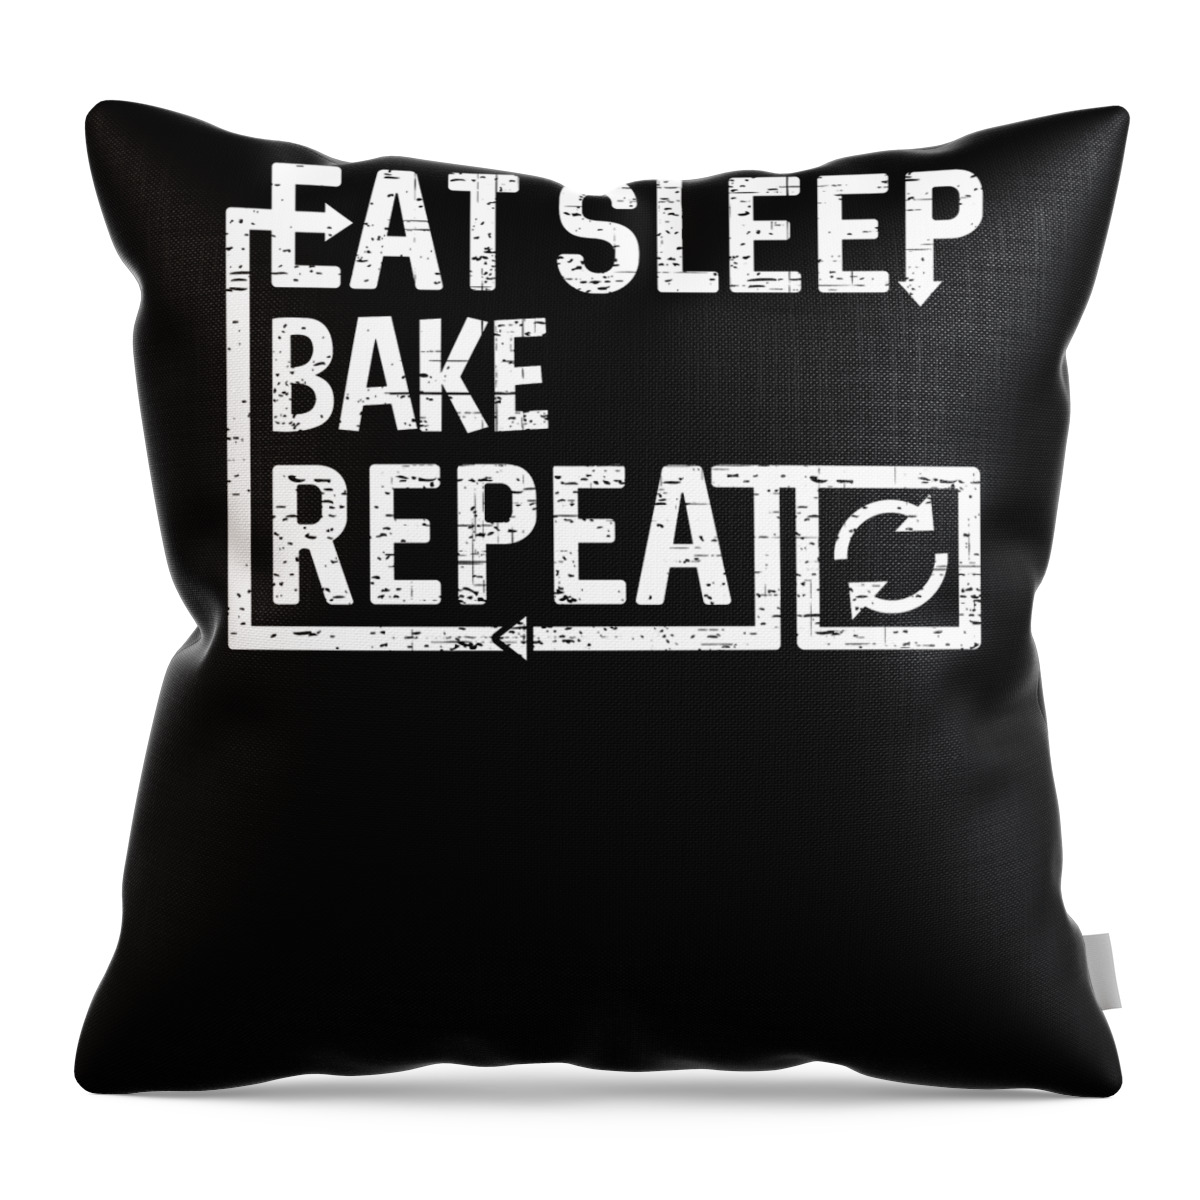 Cool Throw Pillow featuring the digital art Eat Sleep Bake by Flippin Sweet Gear